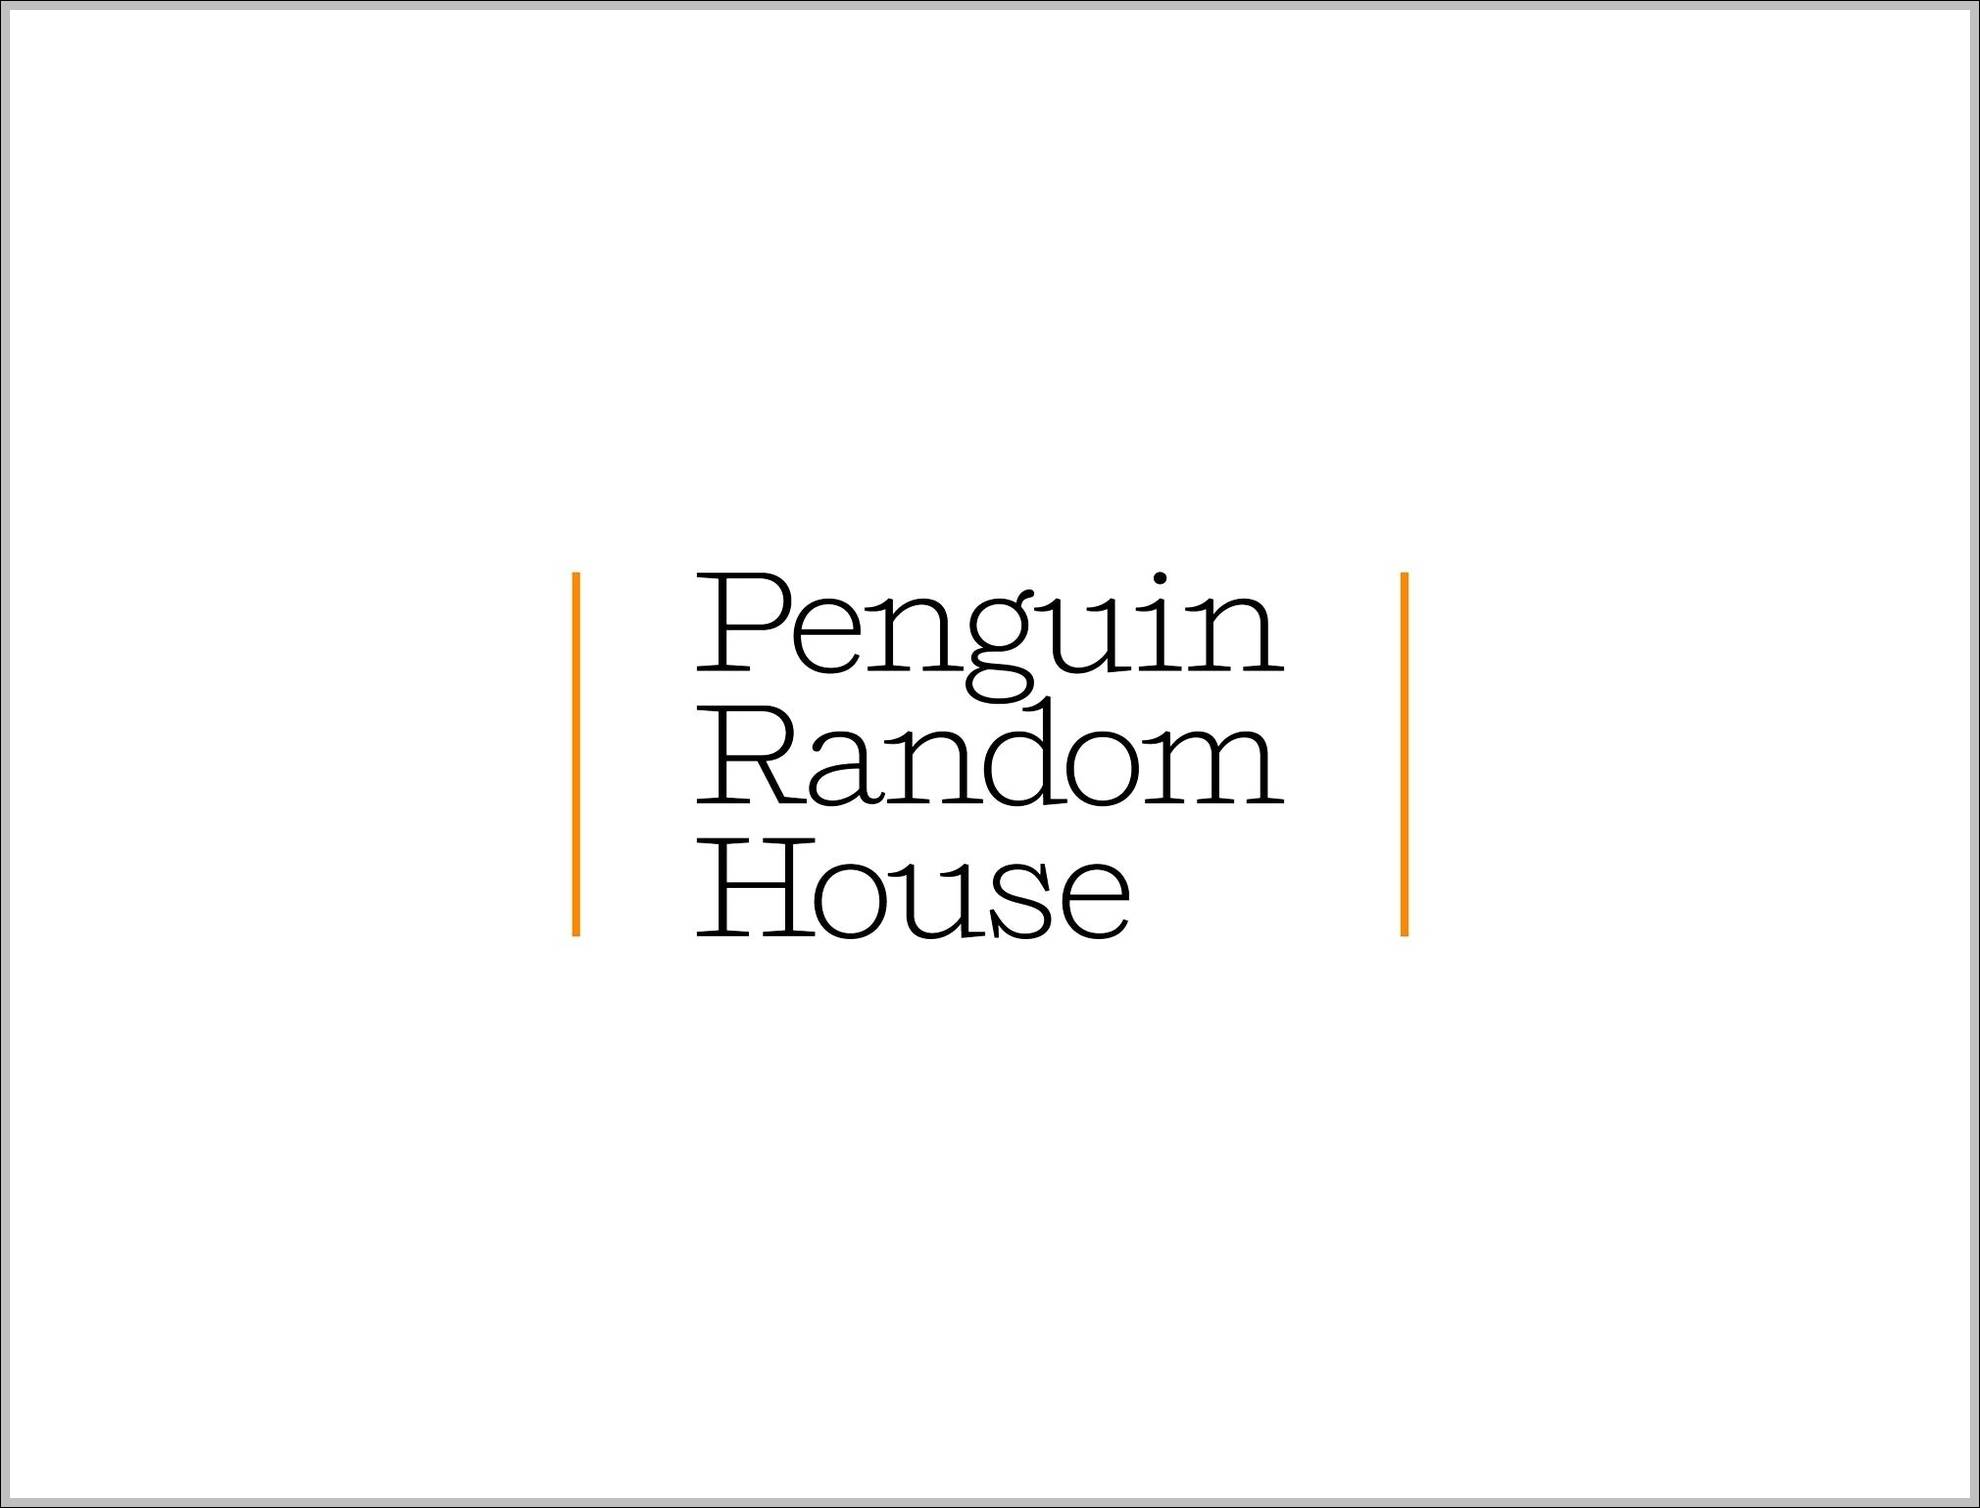 Pengui Random House logo 2014